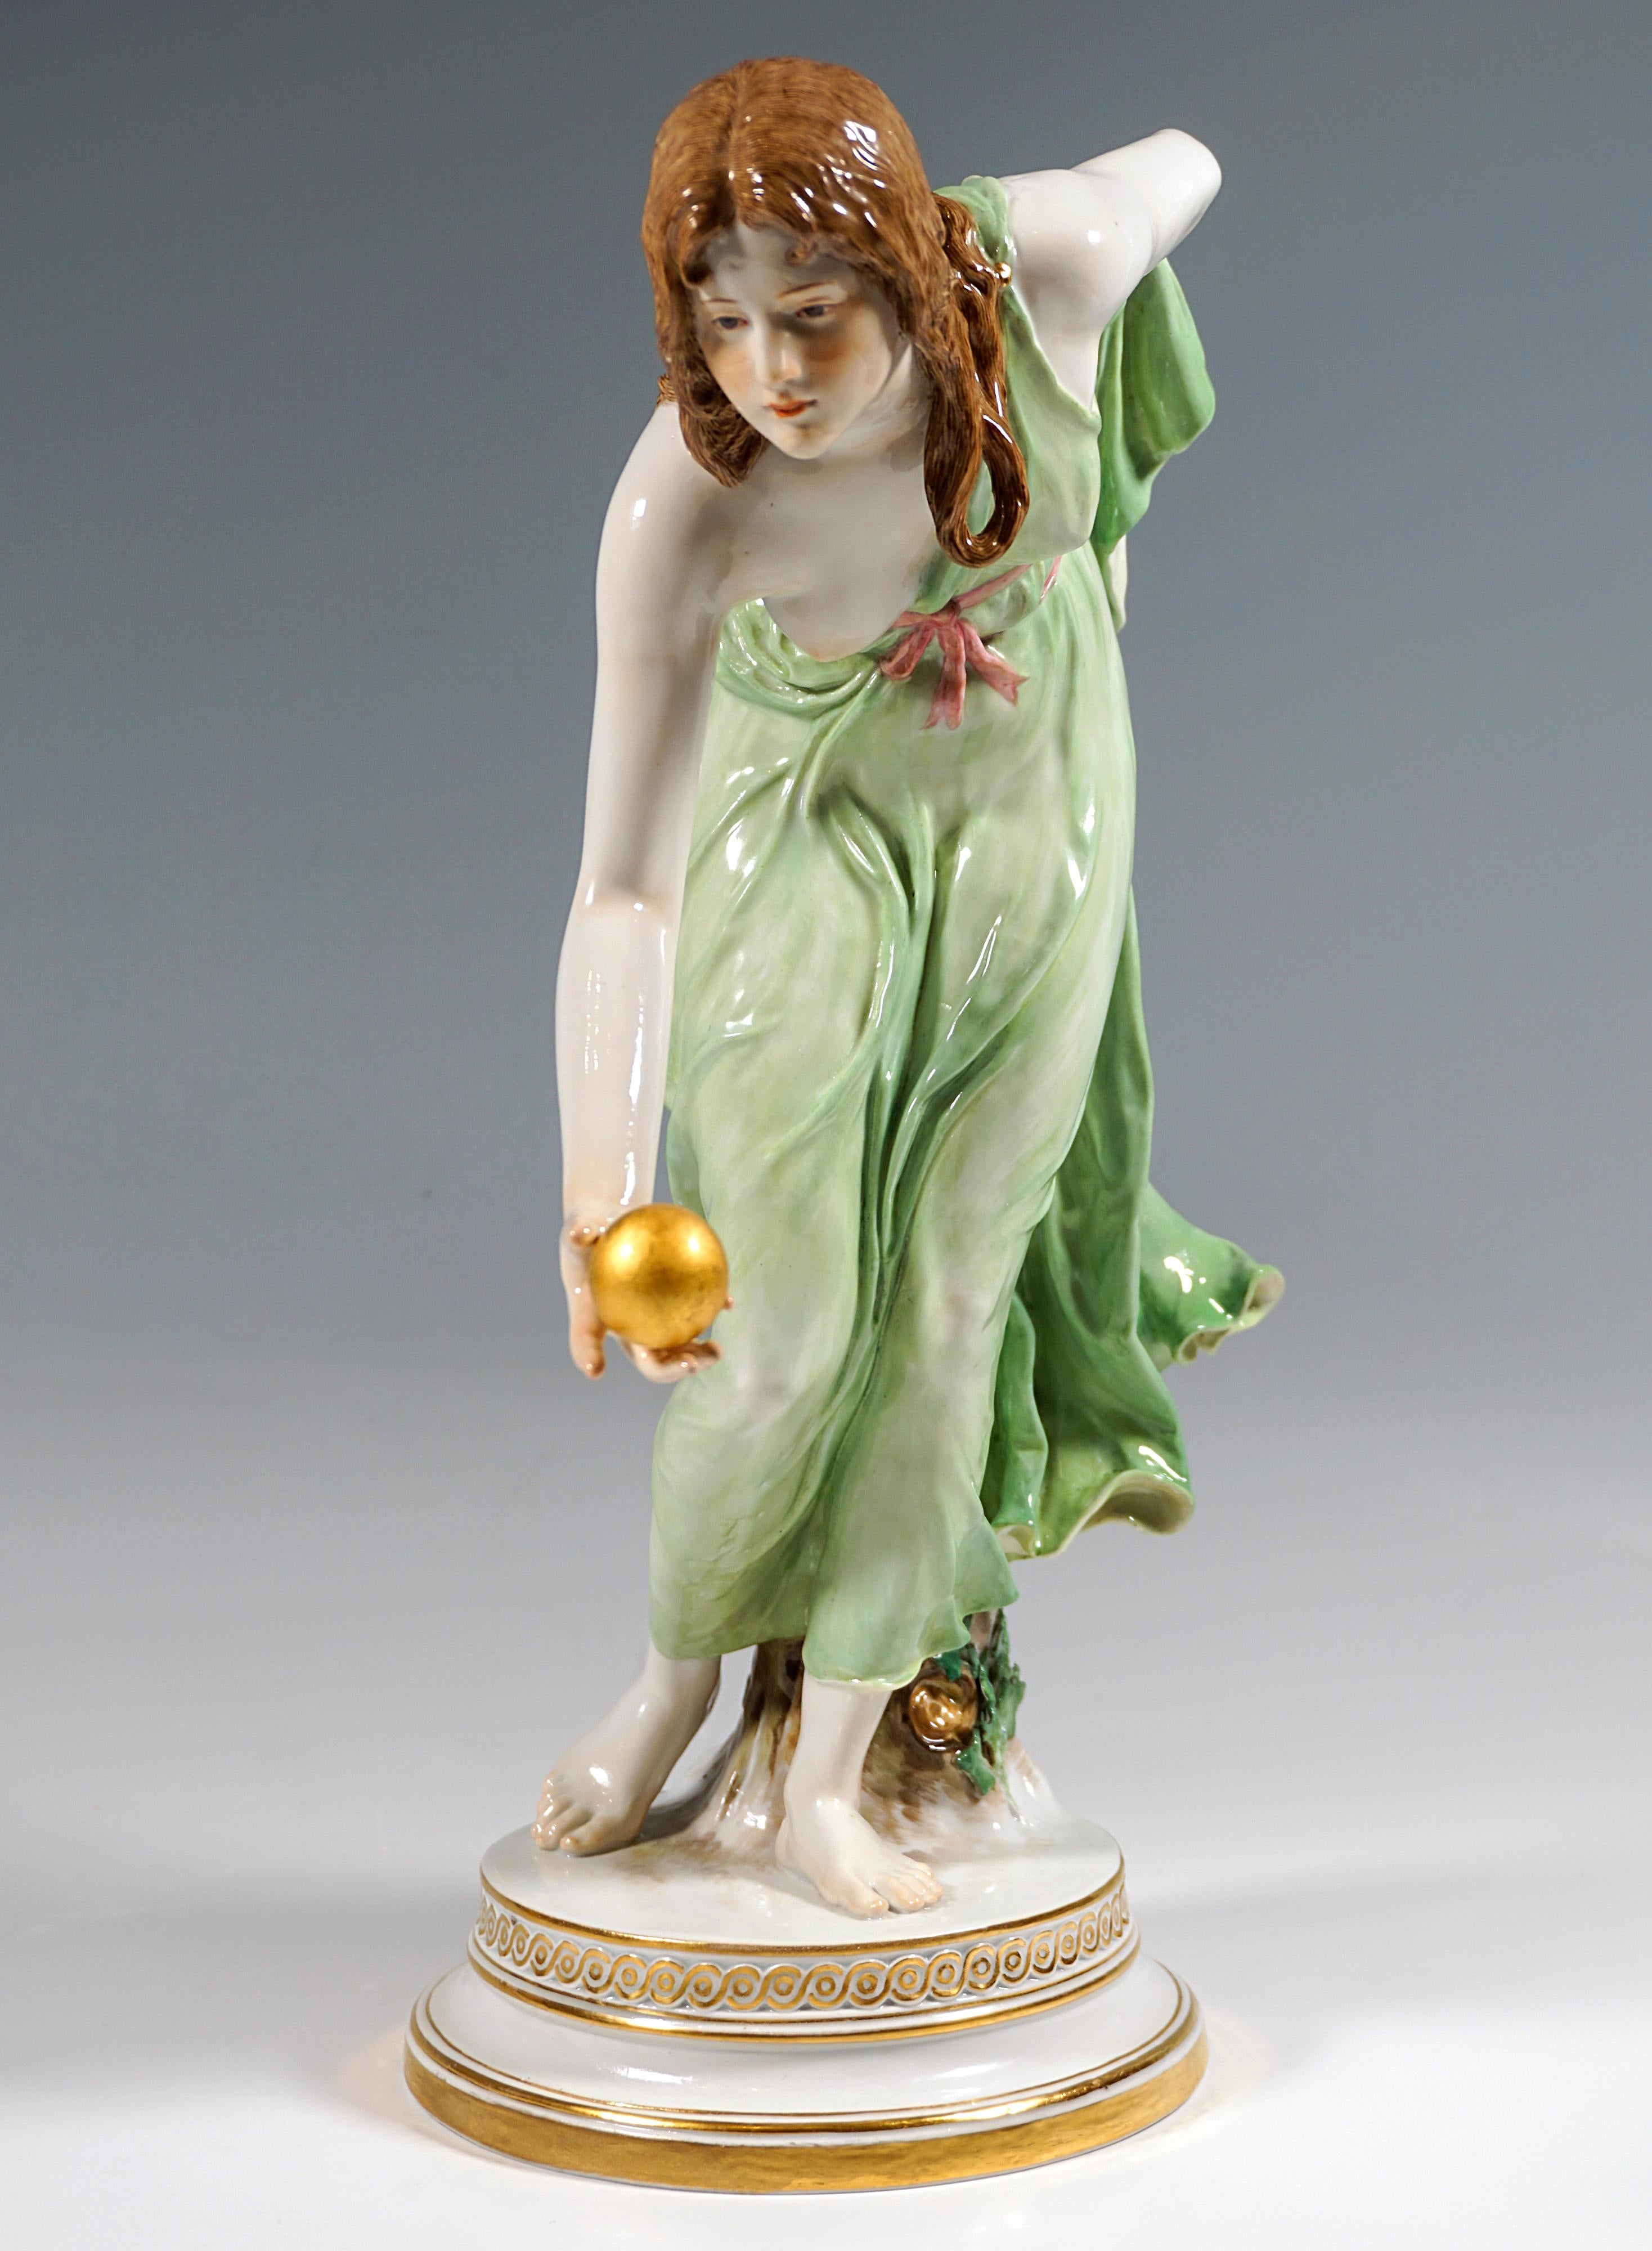 Représentation extrêmement décorative, entièrement sculptée, d'une beauté Art nouveau vêtue d'une robe tombant doucement, inclinée vers l'avant pour lancer une balle d'or, l'avant-bras gauche tenant l'ourlet arrière de la robe dans son dos.
La